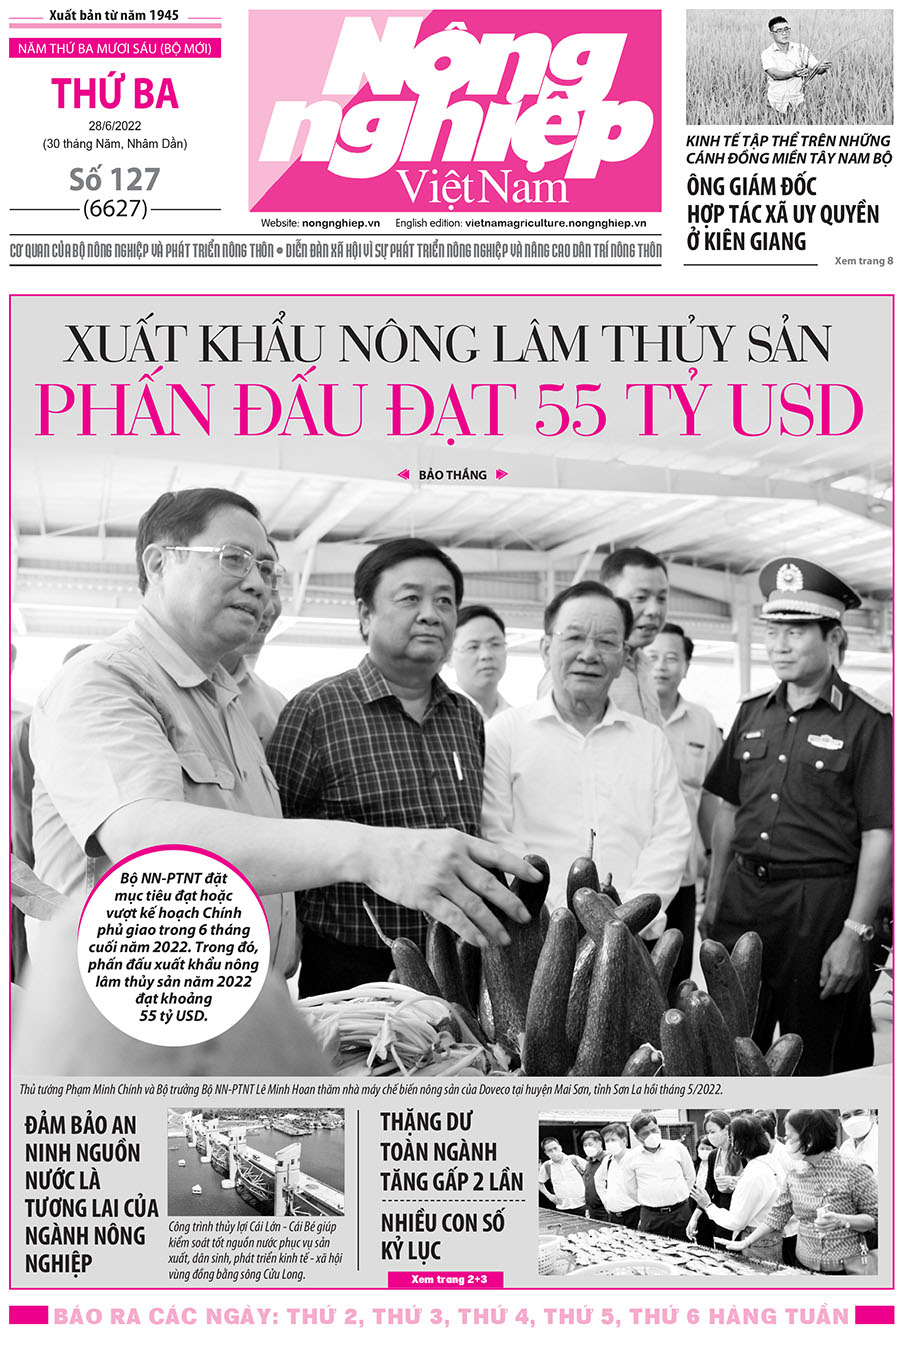 Tổng hợp tin tức báo giấy trên Báo Nông nghiệp Việt Nam số 127 ra ngày 28/6/2022